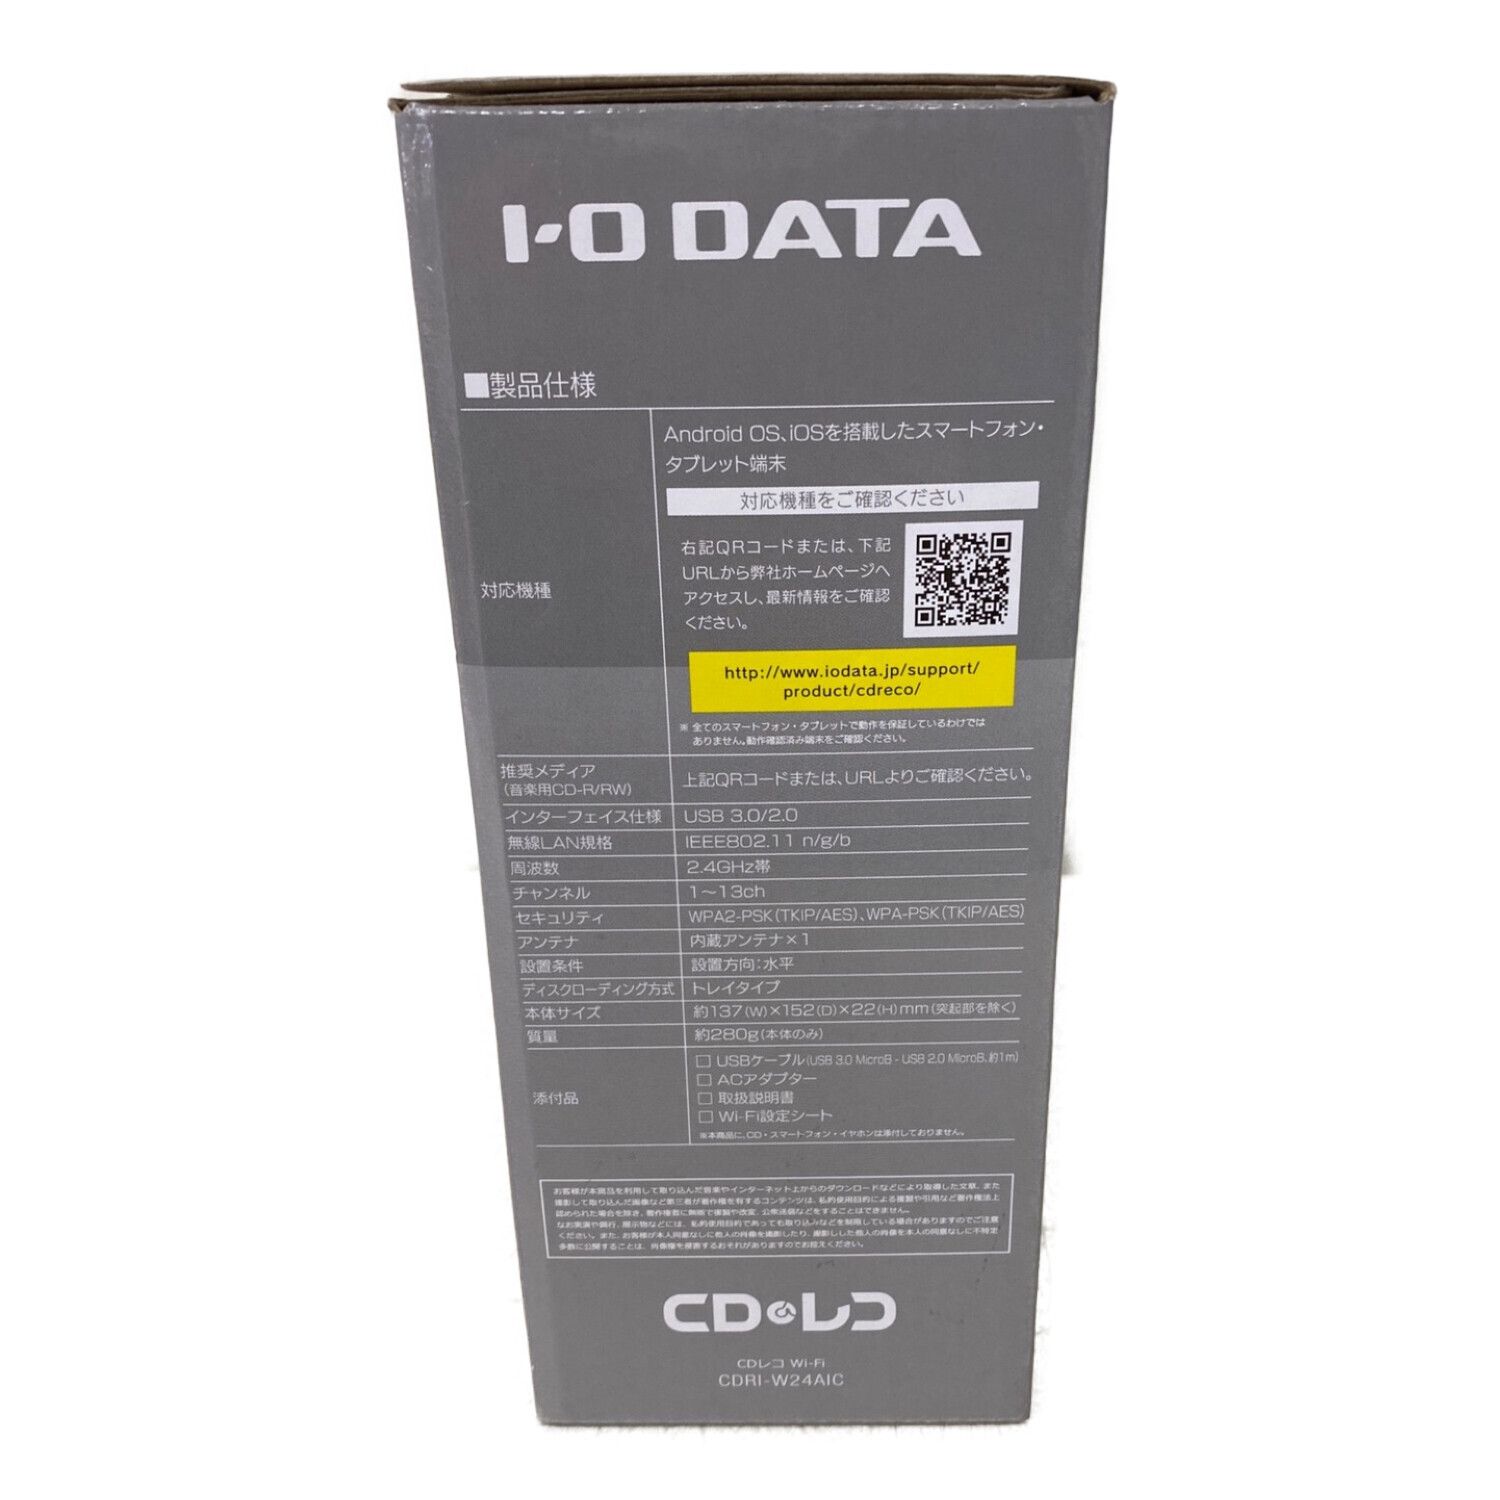 IODATAI-O DATA　CDレコ Wi-Fi　CDRI-W24AIC